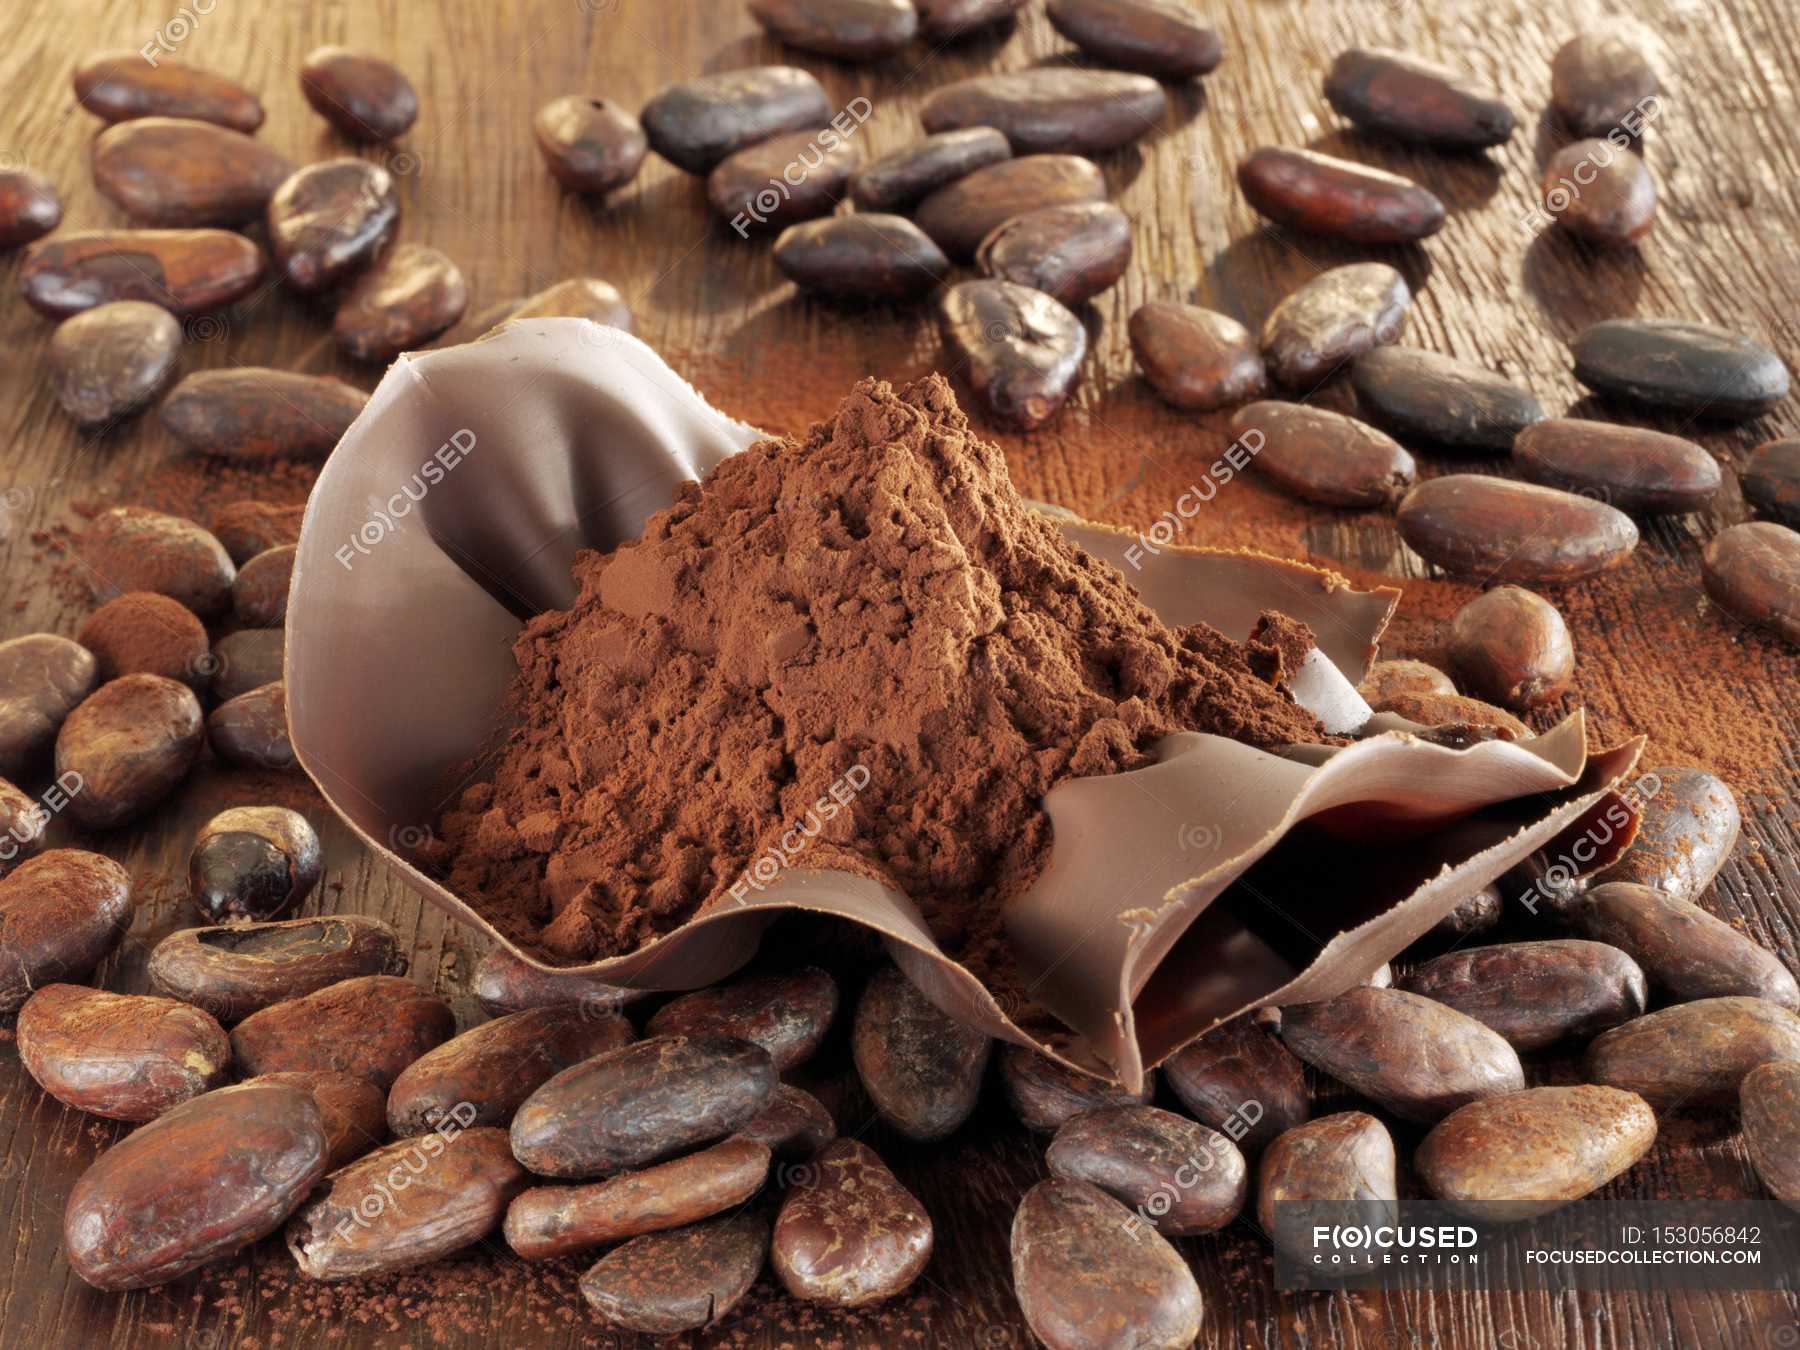 Шоколад в порошке. Шоколад и какао порошок. Какао порошок алкализованный, Theobroma, 10-12%. Какао Бобы и порошок. Сырье для шоколада.